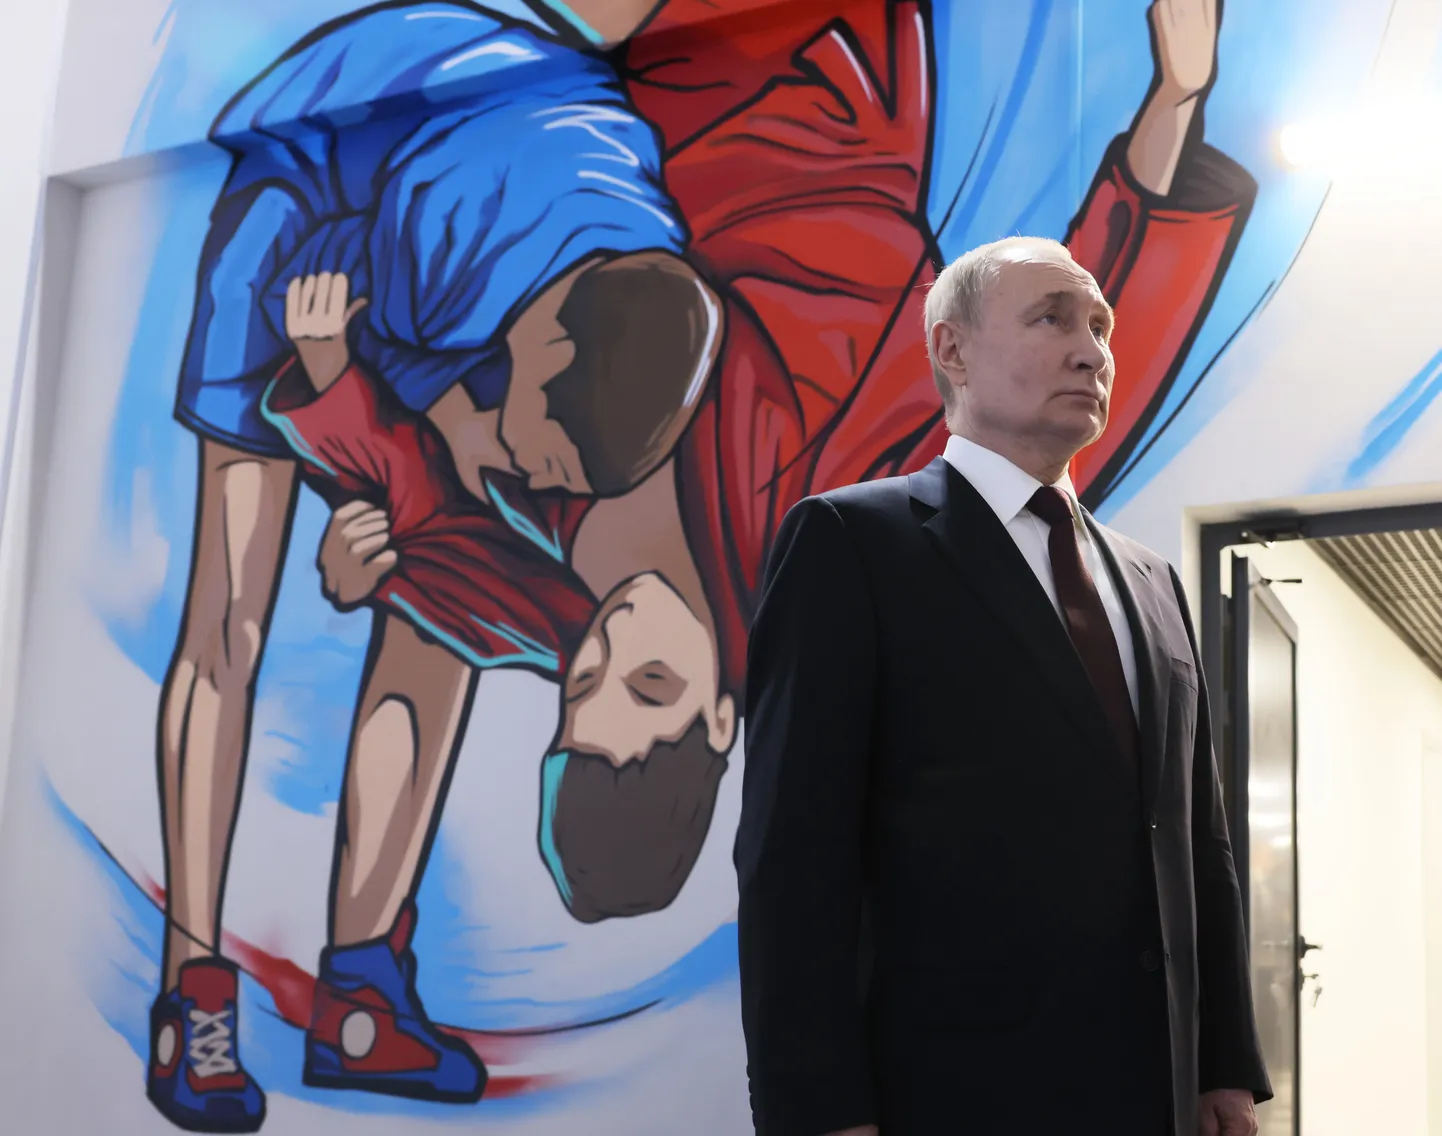 Самбист Путин больше не появляться в спортивном костюме даже в зале для самбо. Дворец самбо, Краснодар, Россия, 7 марта 2024 года.